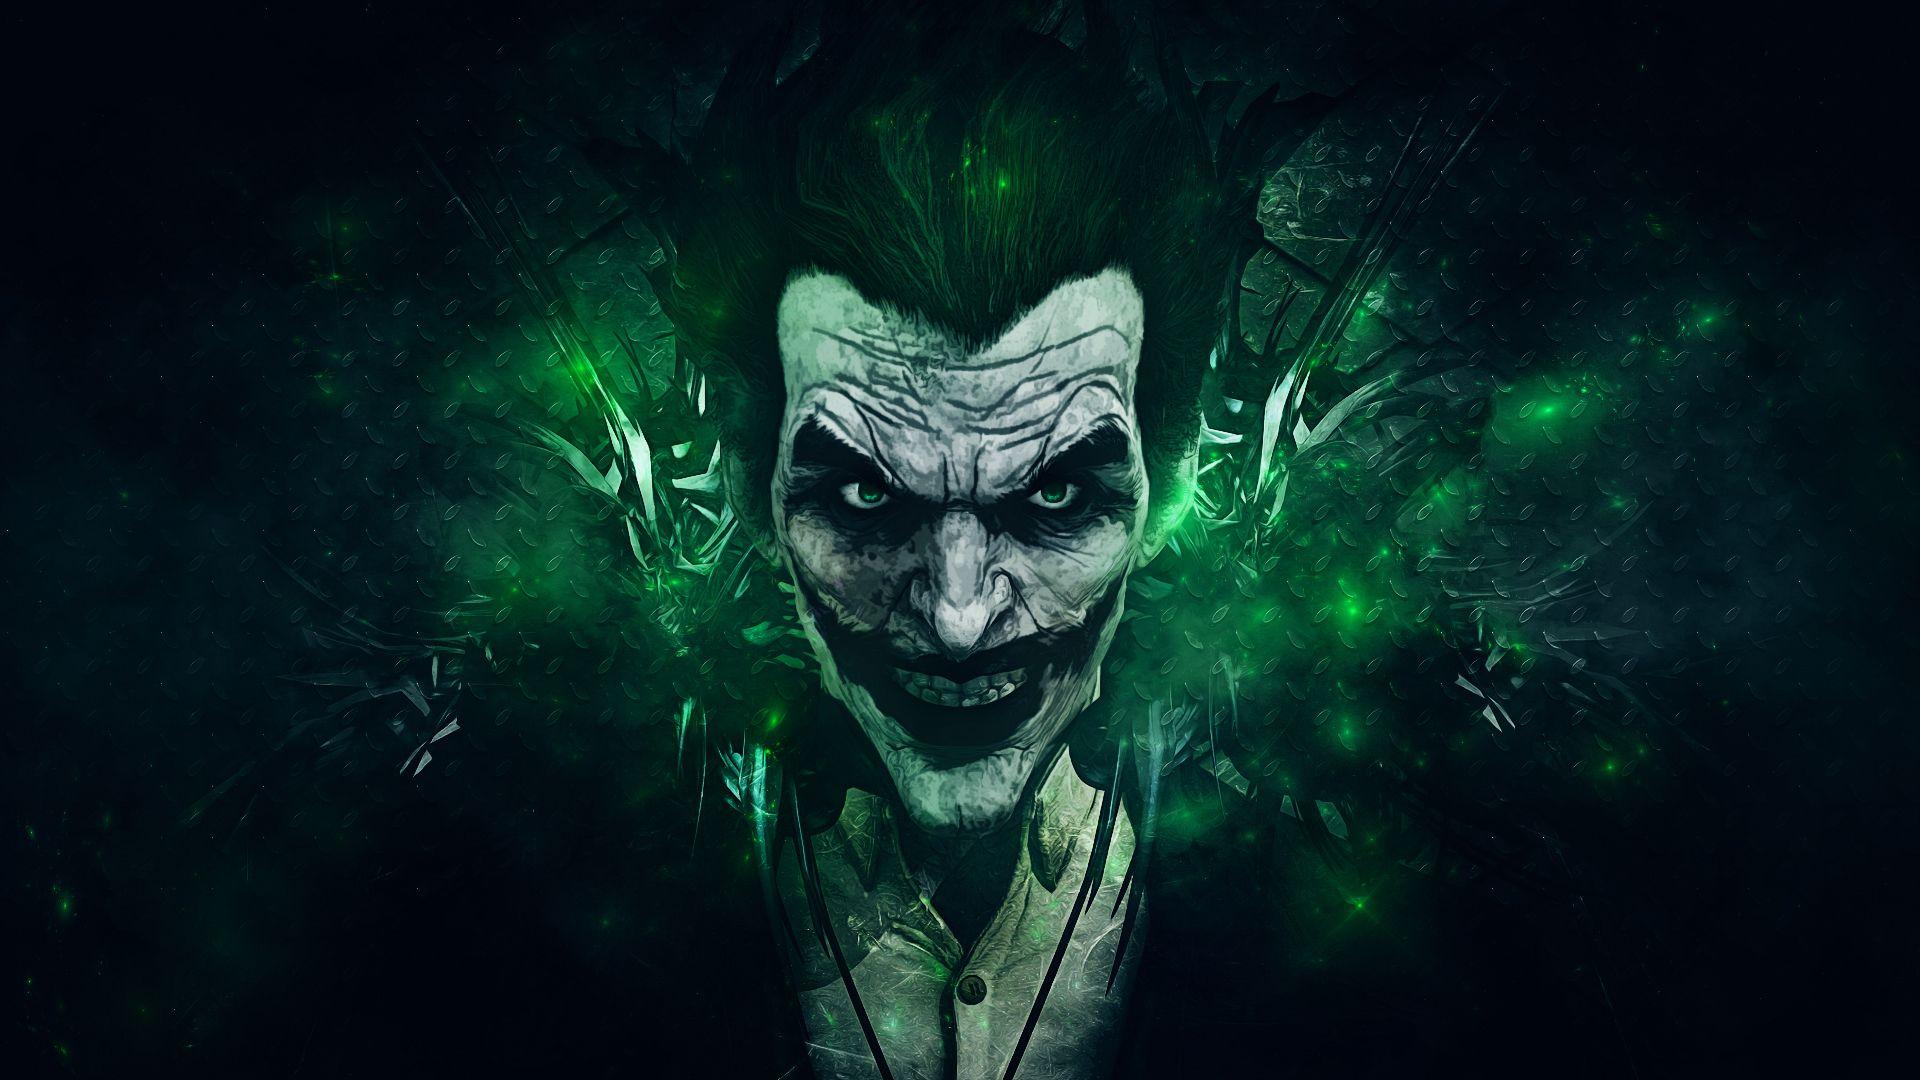 Wallpapers : Batman Arkham Origins, Joker, games montreal, Rocksteady